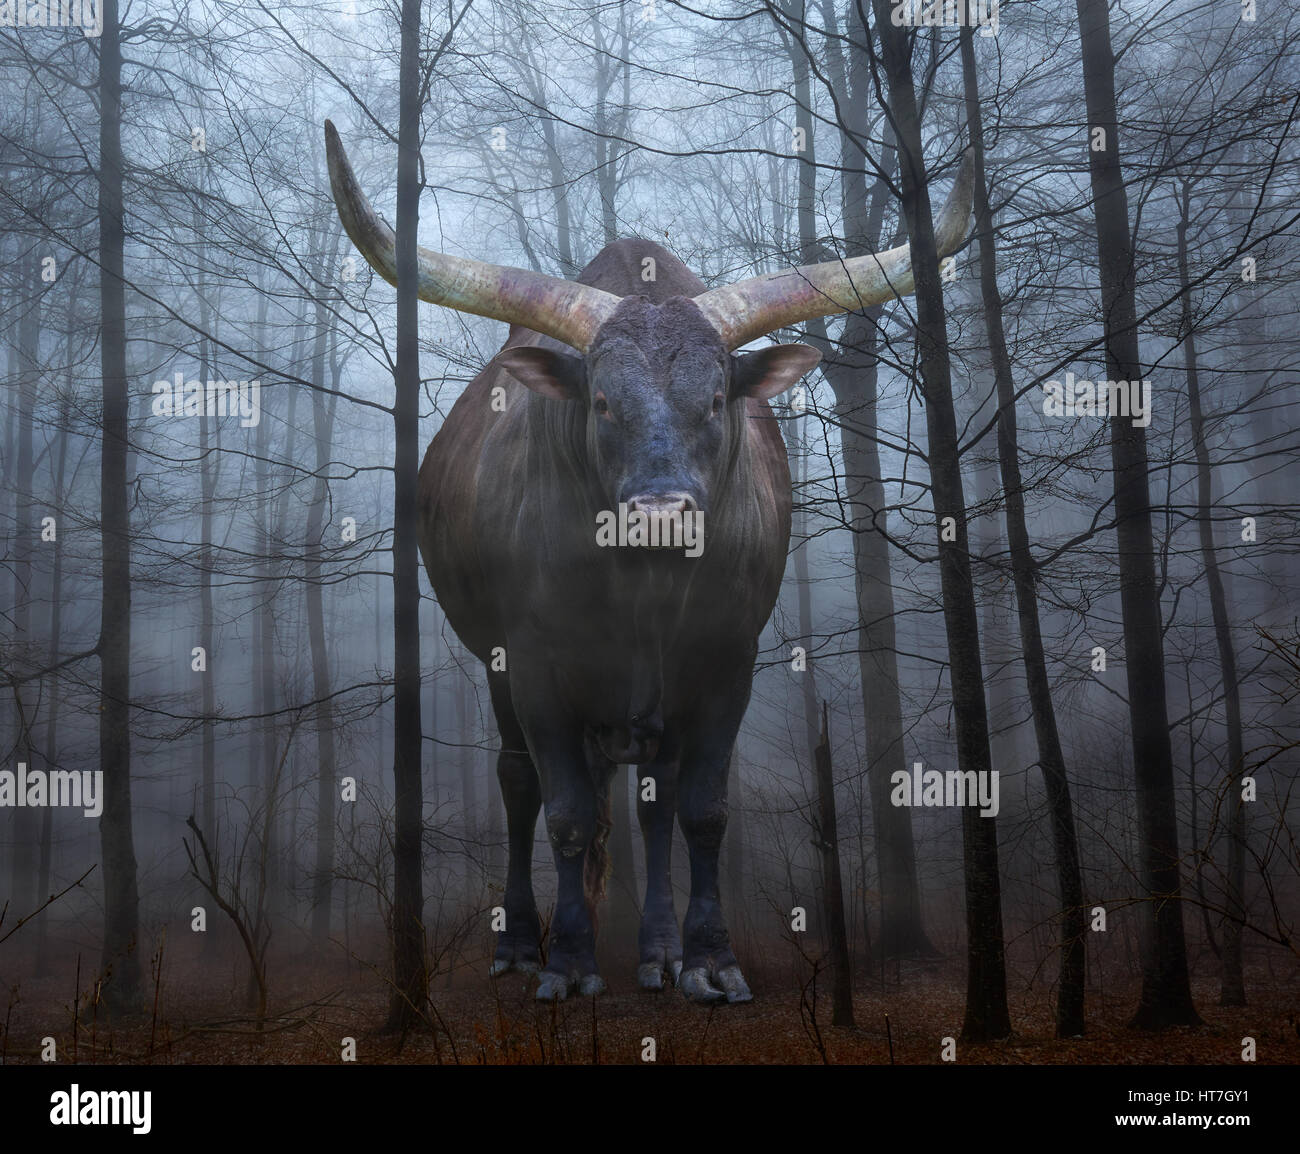 Image conceptuelle avec un énorme taureau watusi dans une forêt dans le brouillard effrayant Banque D'Images